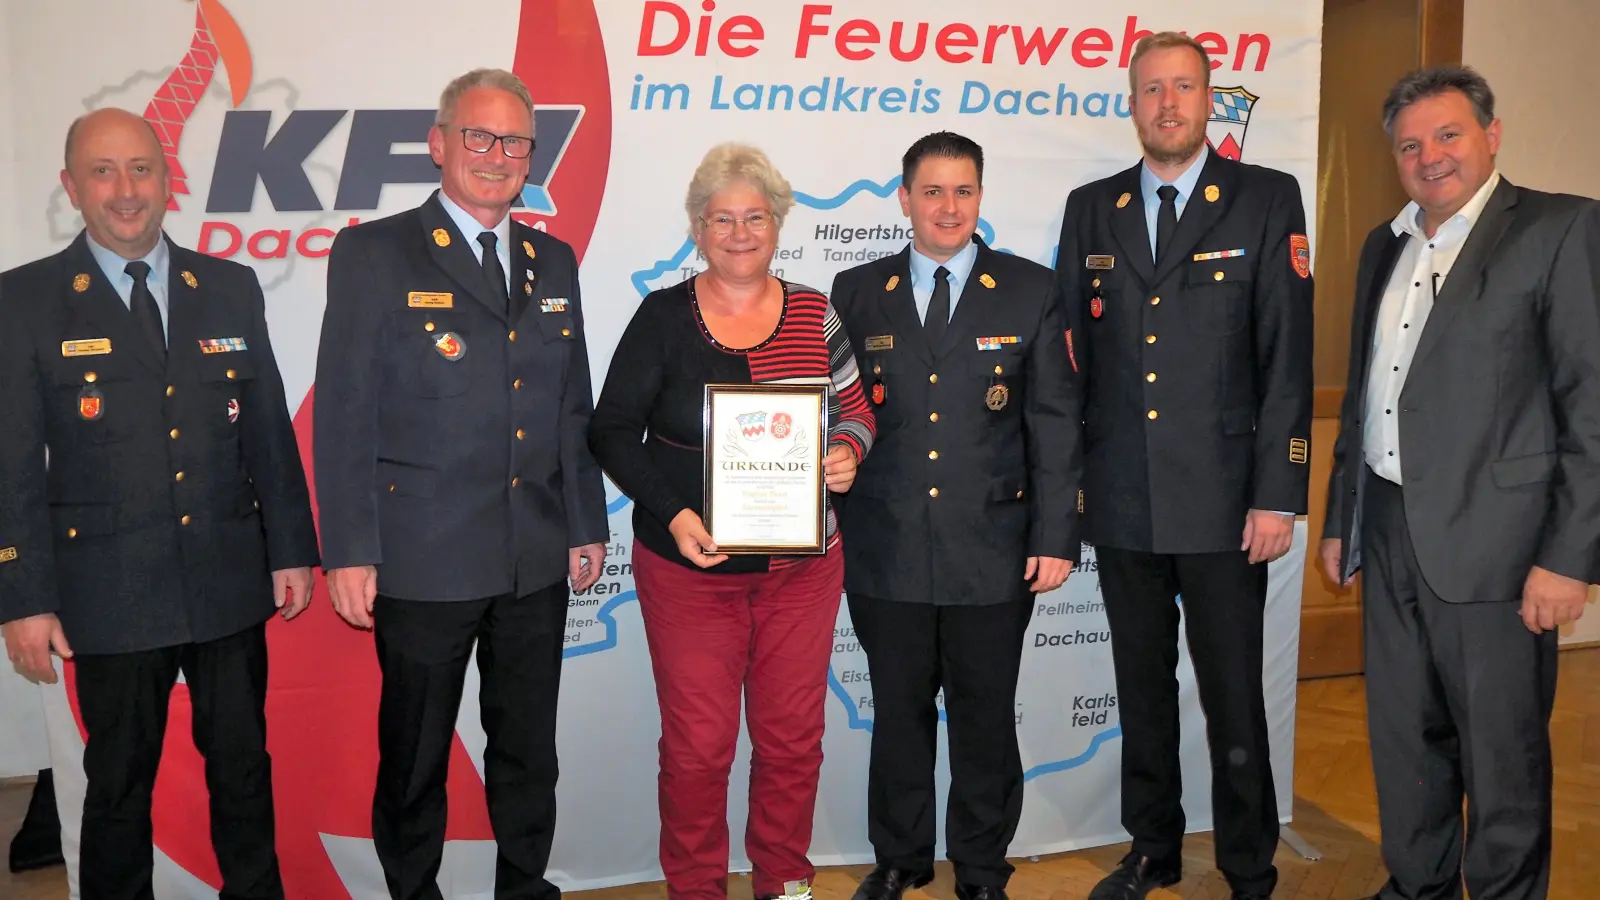 Dagmar Bauer wurde zum Ehrenmitglied des Kreisfeuerwehrverbandes ernannt. (Foto: KFV Dachau)